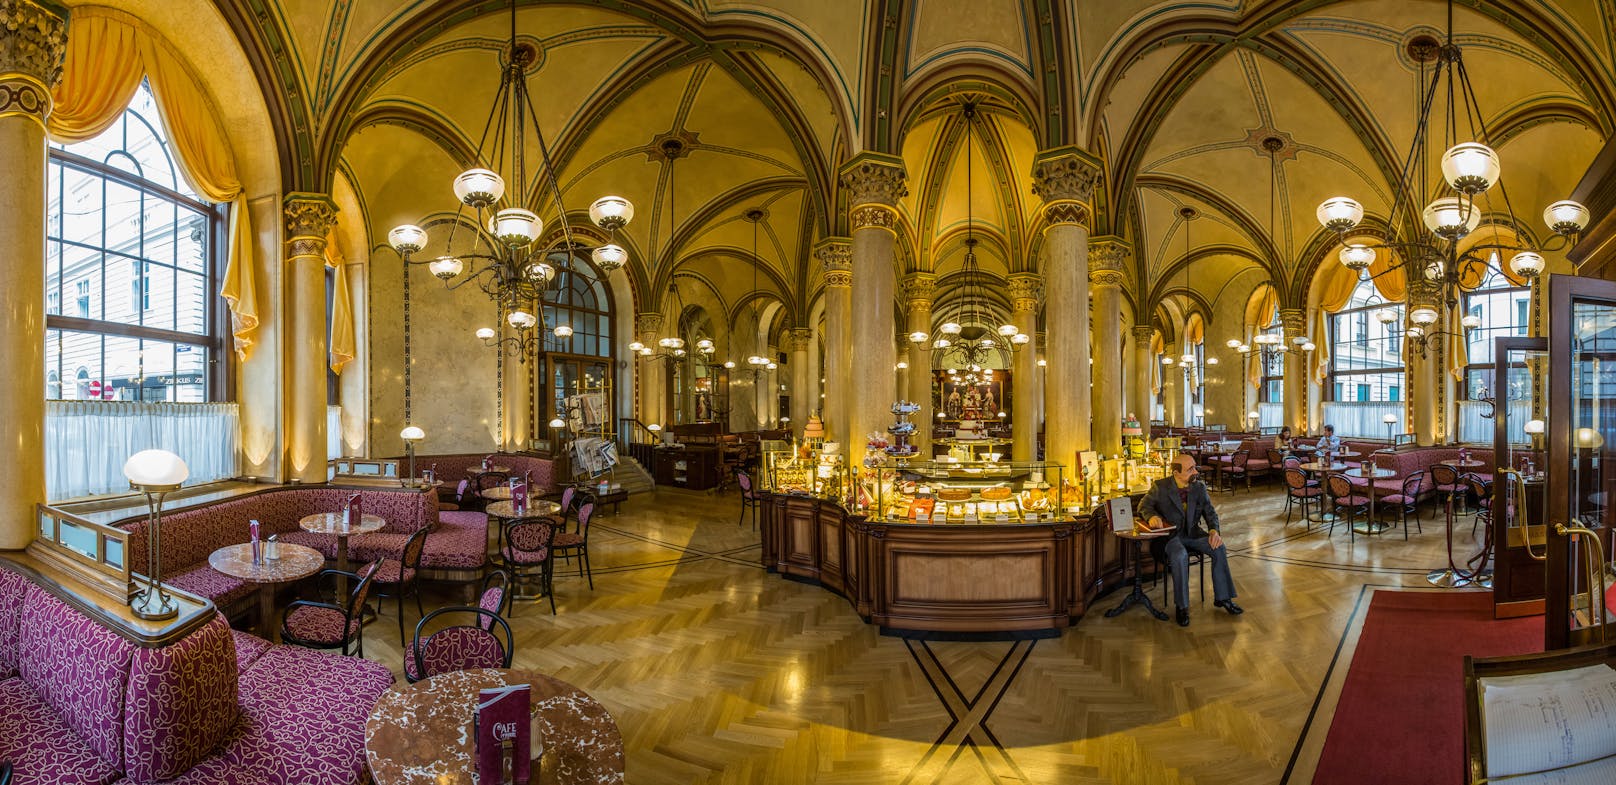 Seit 1876 ist das berühmte Café Central Wien (1., Strauchgasse 4) Mittel- und Entstehungspunkt österreichischer Kulinarik, Literatur, Weltanschauung und Lebenskultur.